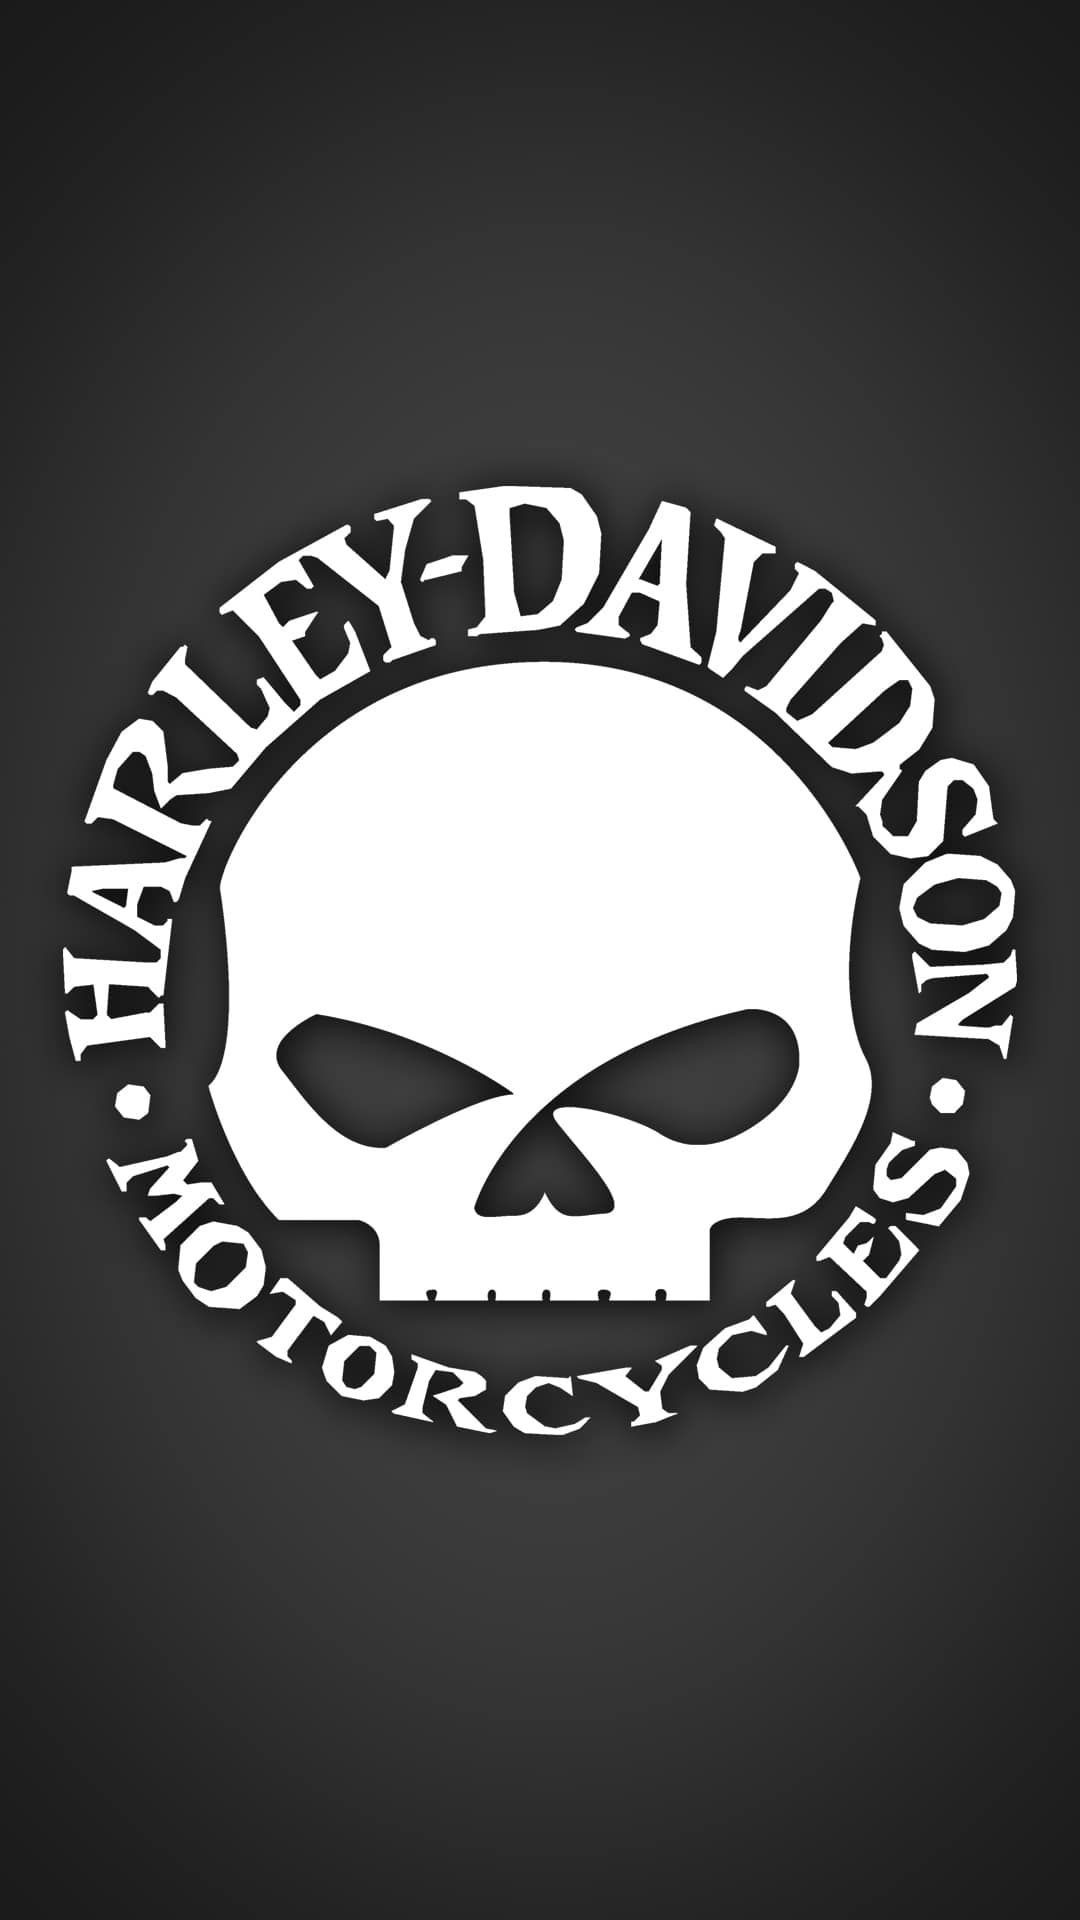 Harley Davidson Willie G Wallpaper